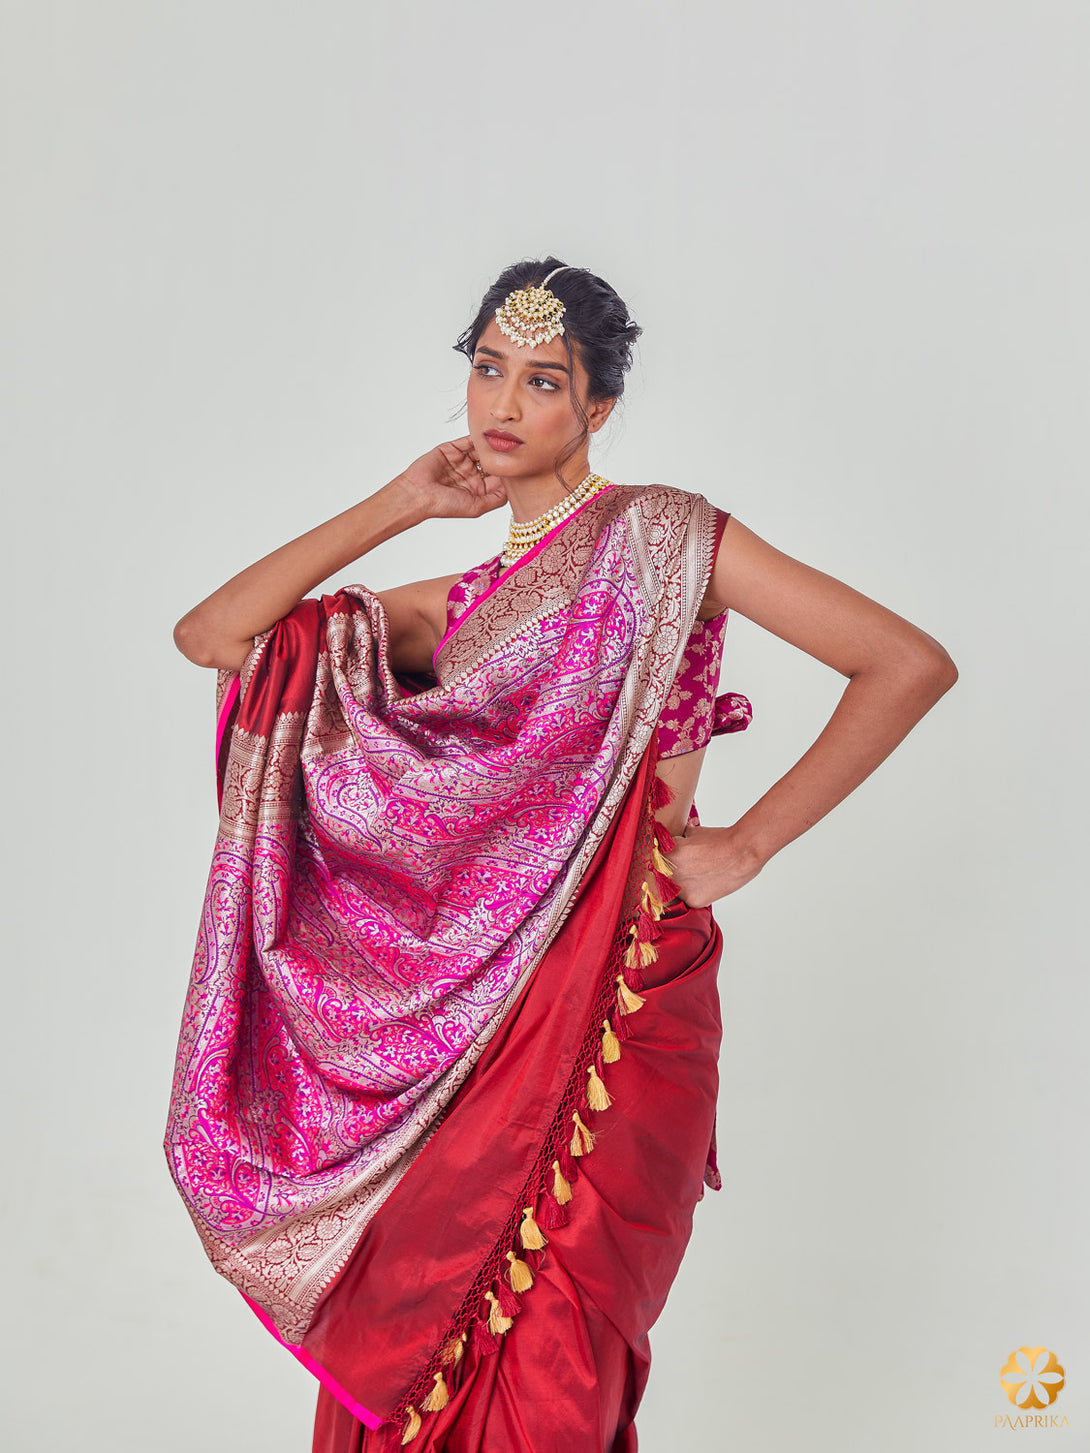 Exquisite Maroon Jamawar Banarasi Saree with Vibrant Pink Palla - Opulence and Elegance.